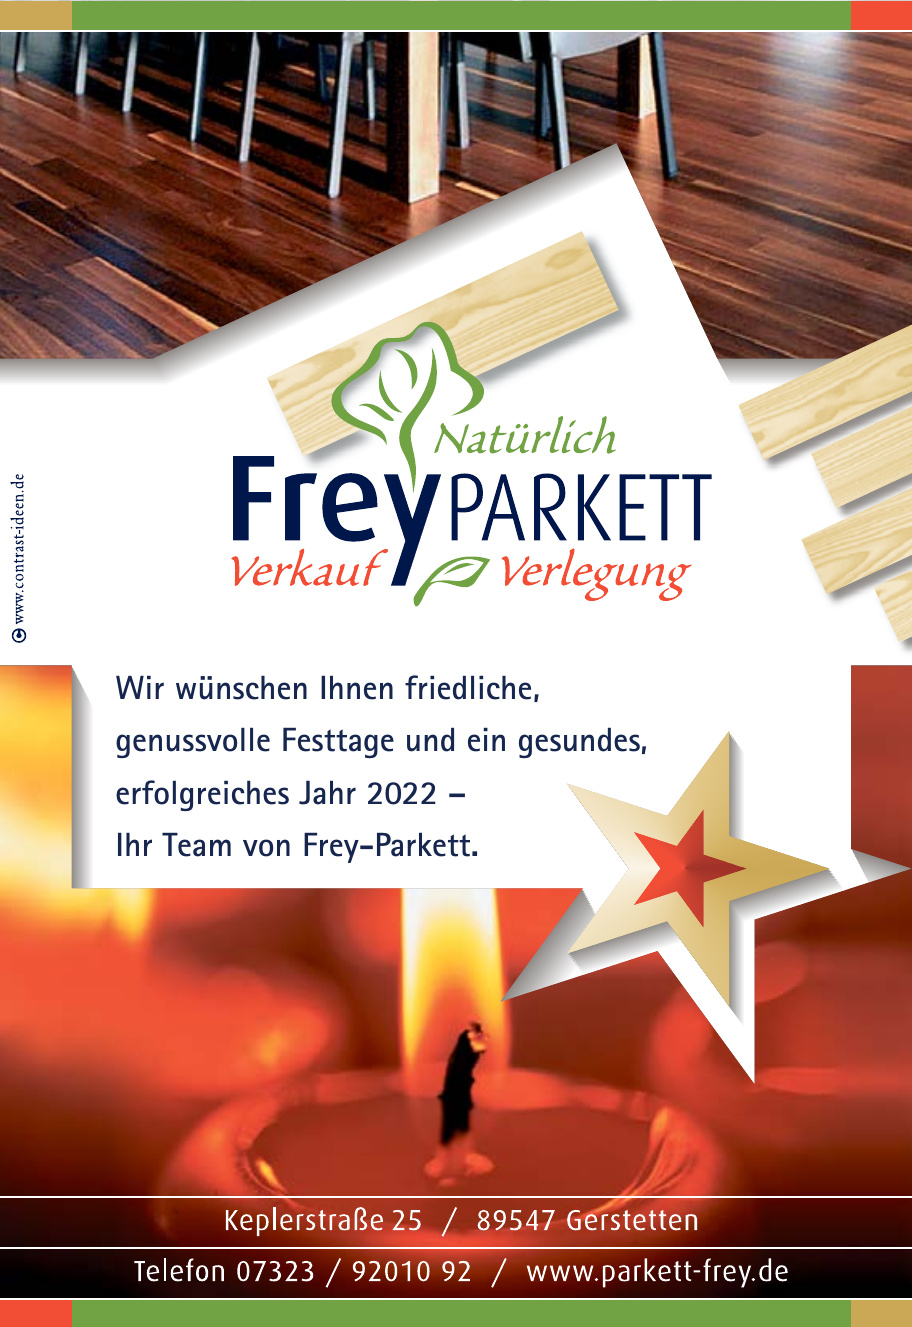 Frey-Parkett